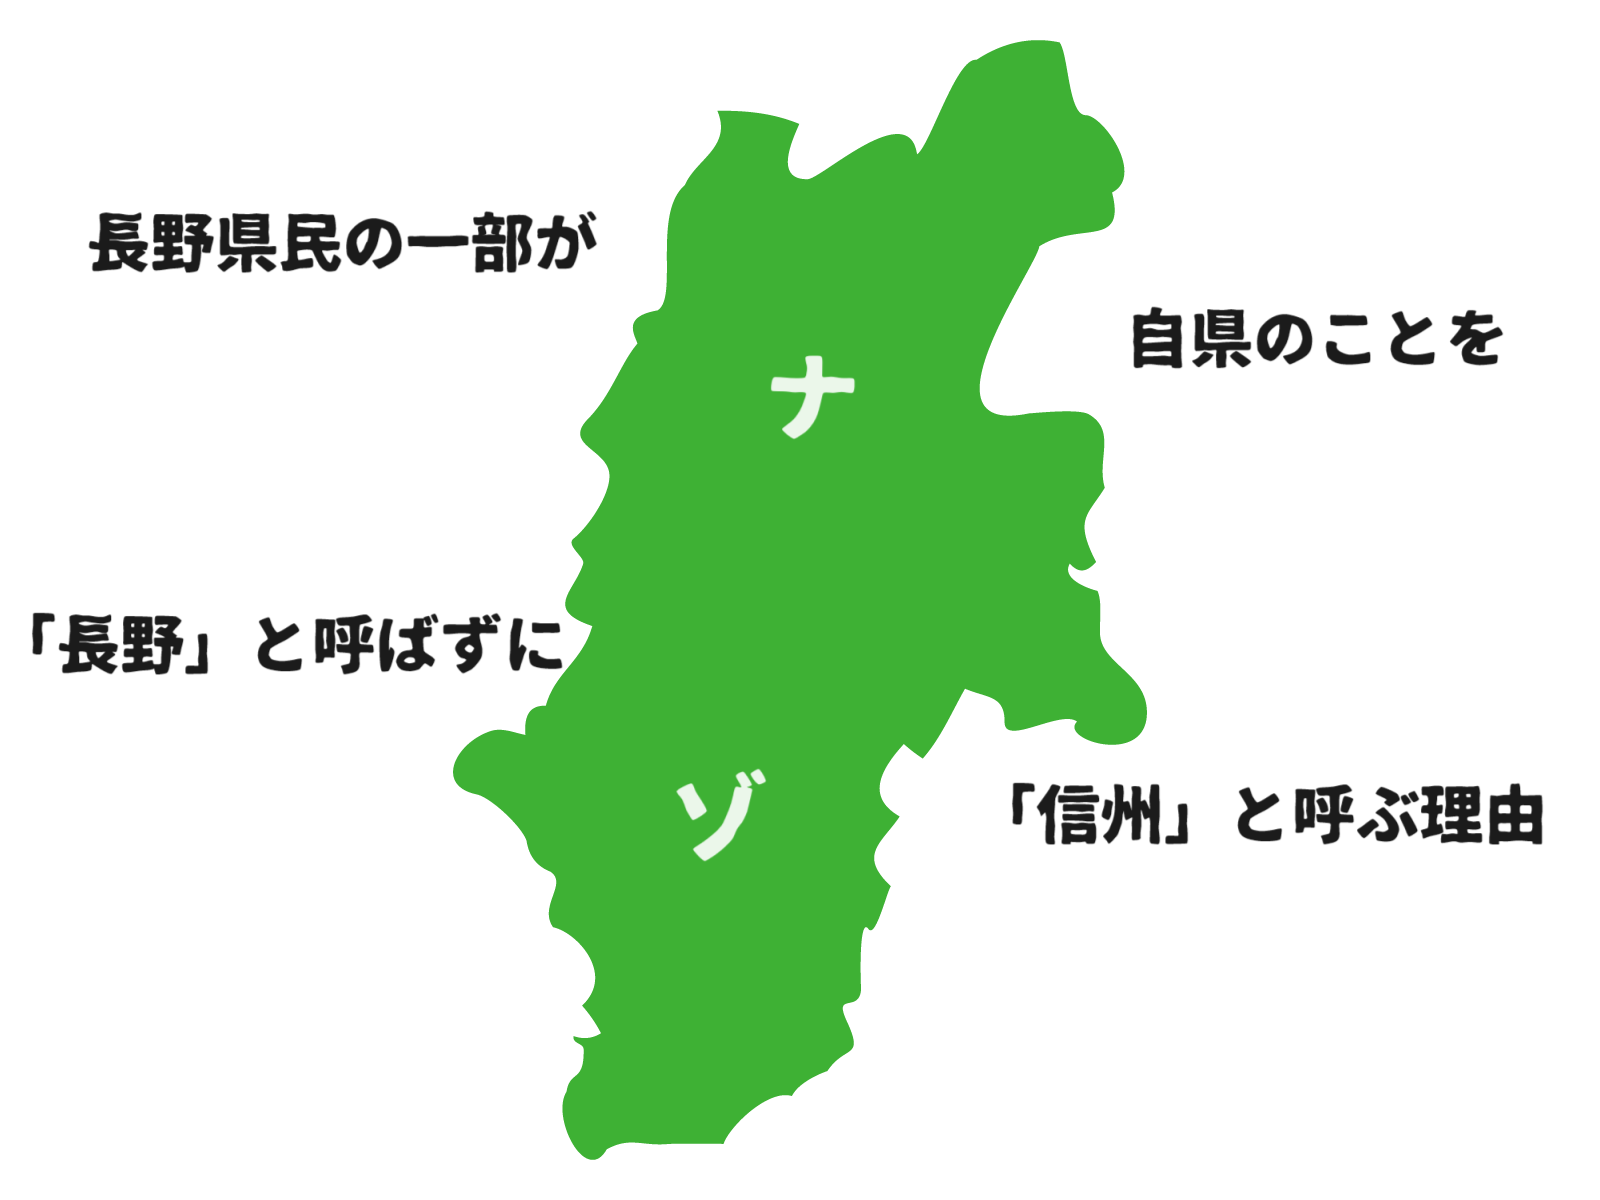 長野県民の一部はなぜ自県を「長野」と呼ばず「信州」と呼ぶのか